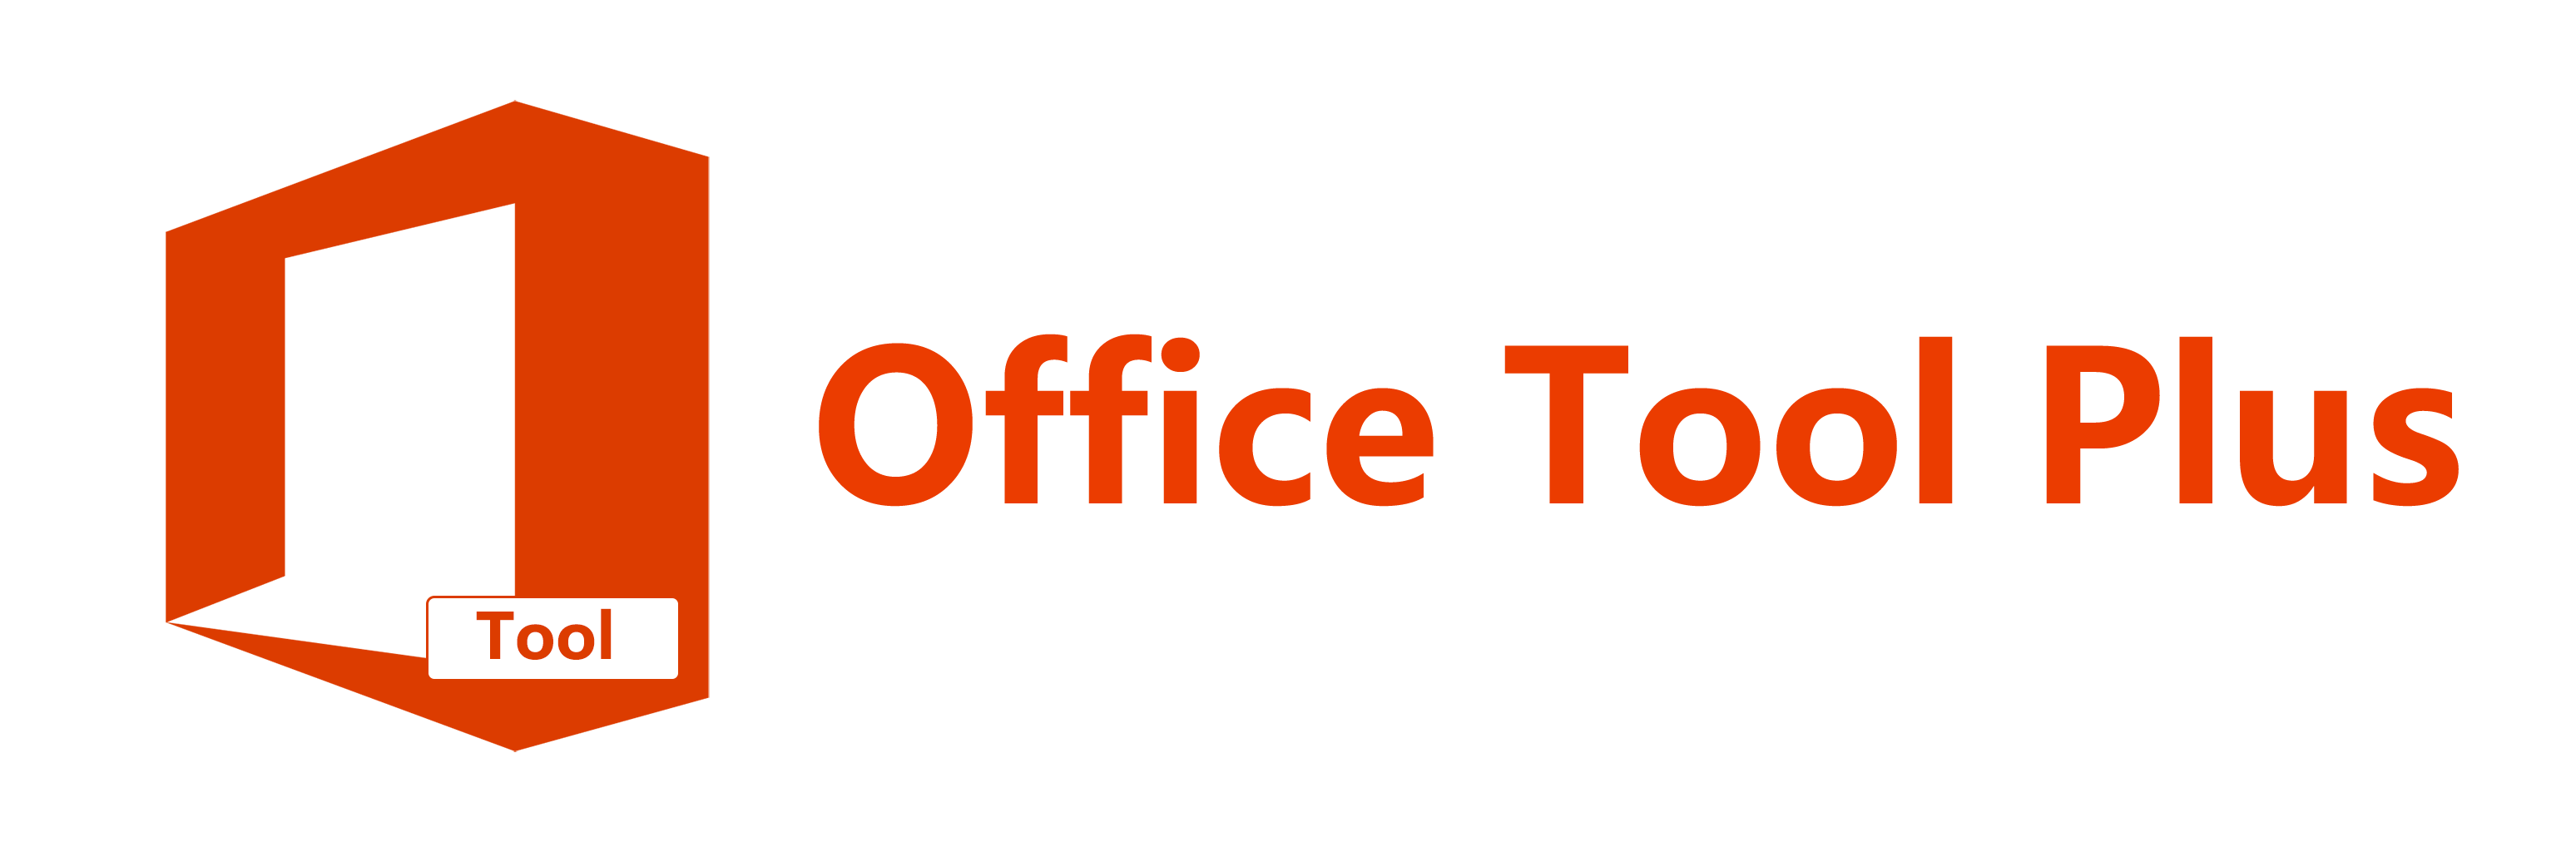 Office Tool Plus İndir – Full v8.1.5.16